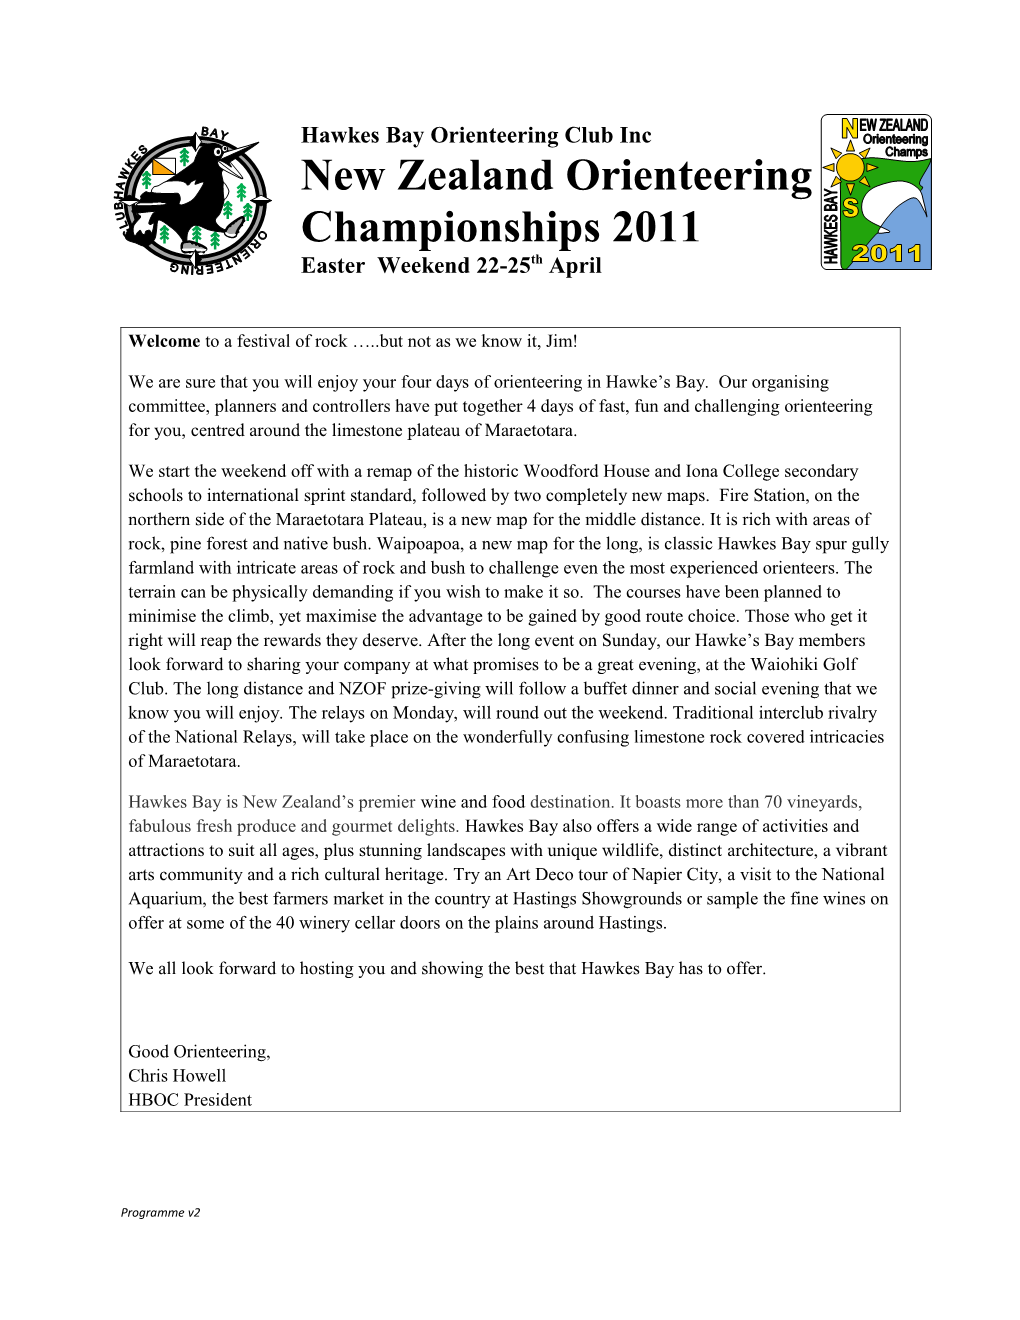 New Zealand Orienteering